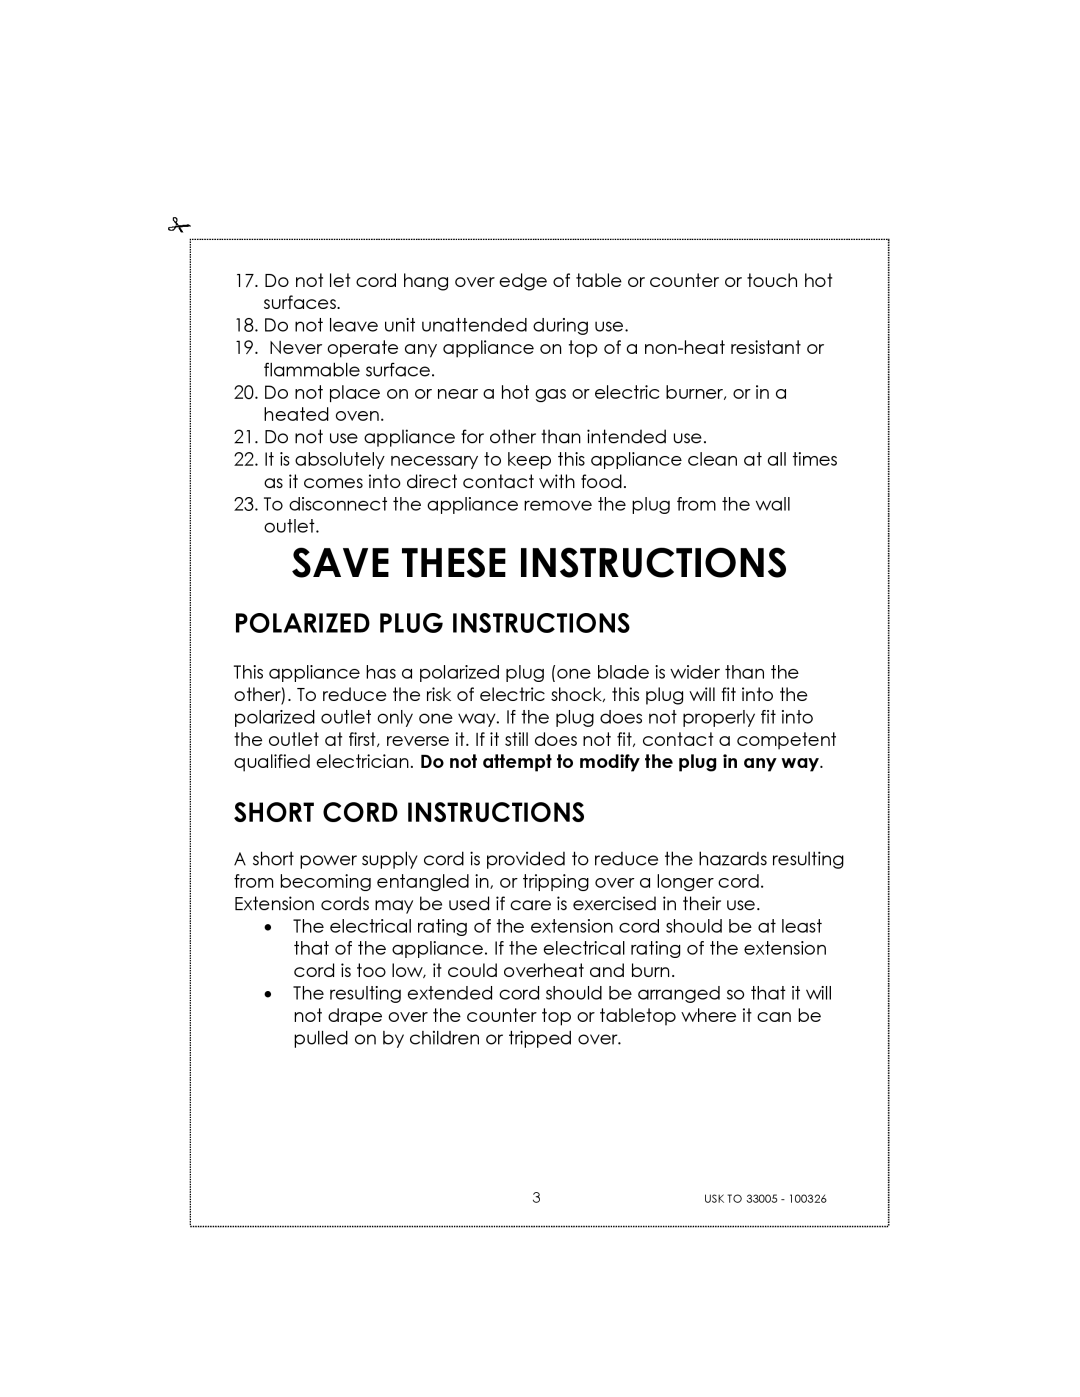 Kalorik 33005 manual Save These Instructions, Polarized Plug Instructions, Short Cord Instructions 